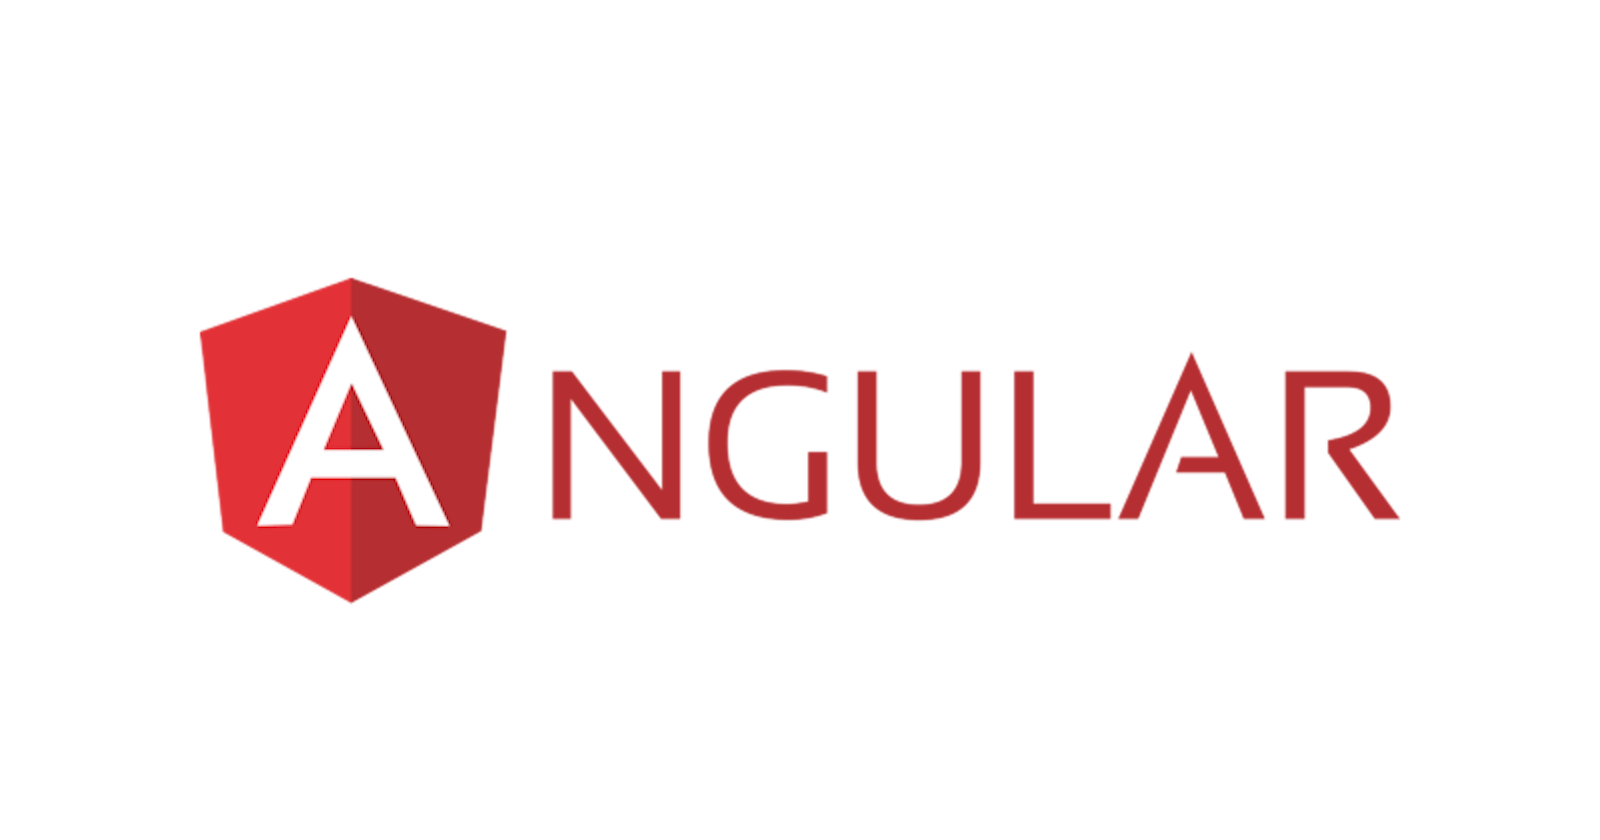 ANGULAR: The anatomy of the angular filesystem